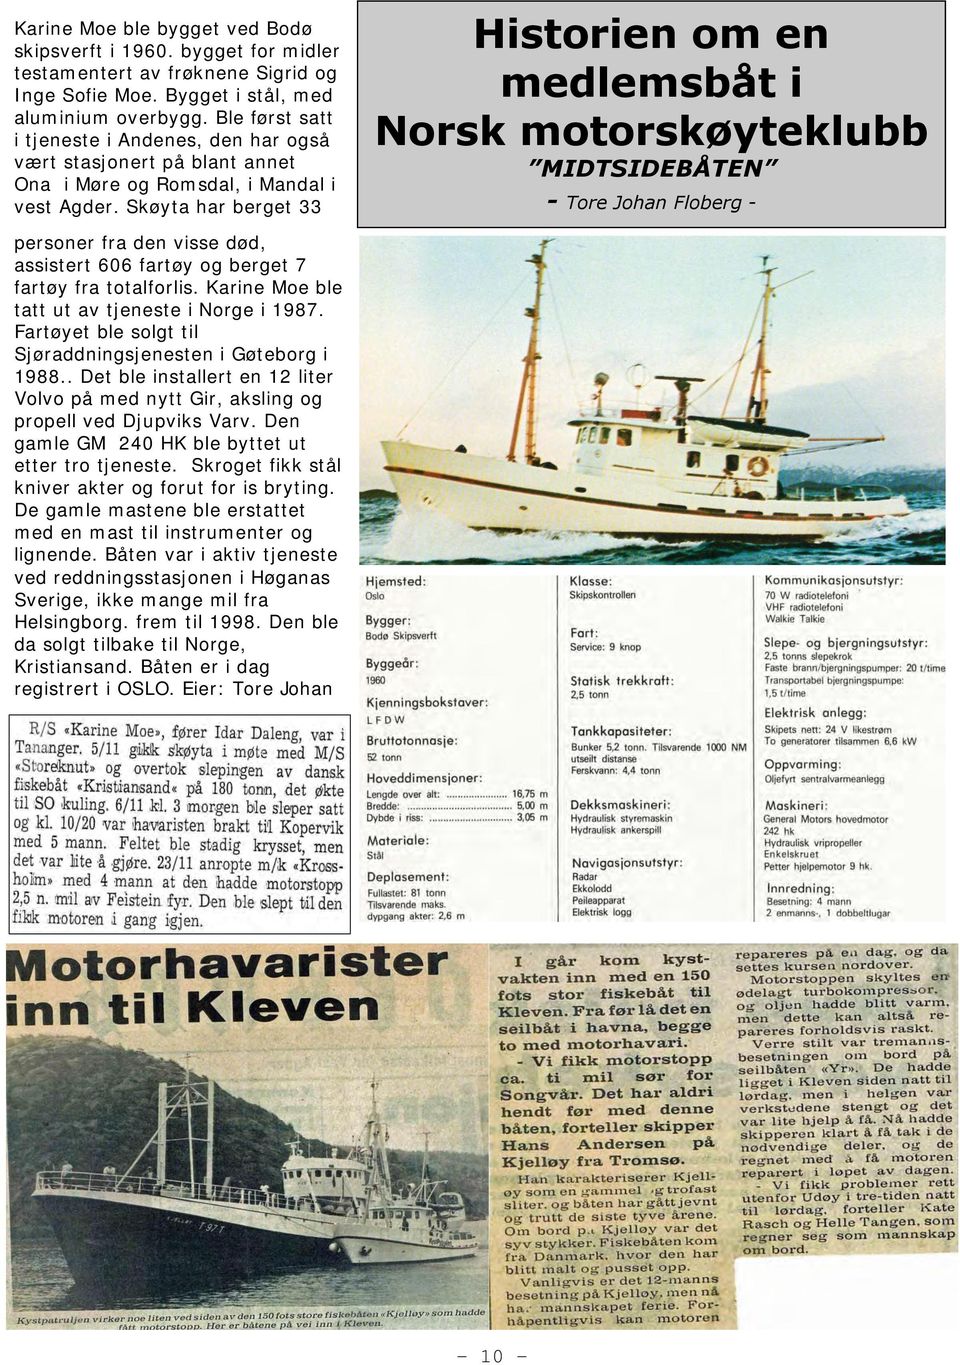 Skøyta har berget 33 Historien om en medlemsbåt i Norsk motorskøyteklubb MIDTSIDEBÅTEN - Tore Johan Floberg - personer fra den visse død, assistert 606 fartøy og berget 7 fartøy fra totalforlis.